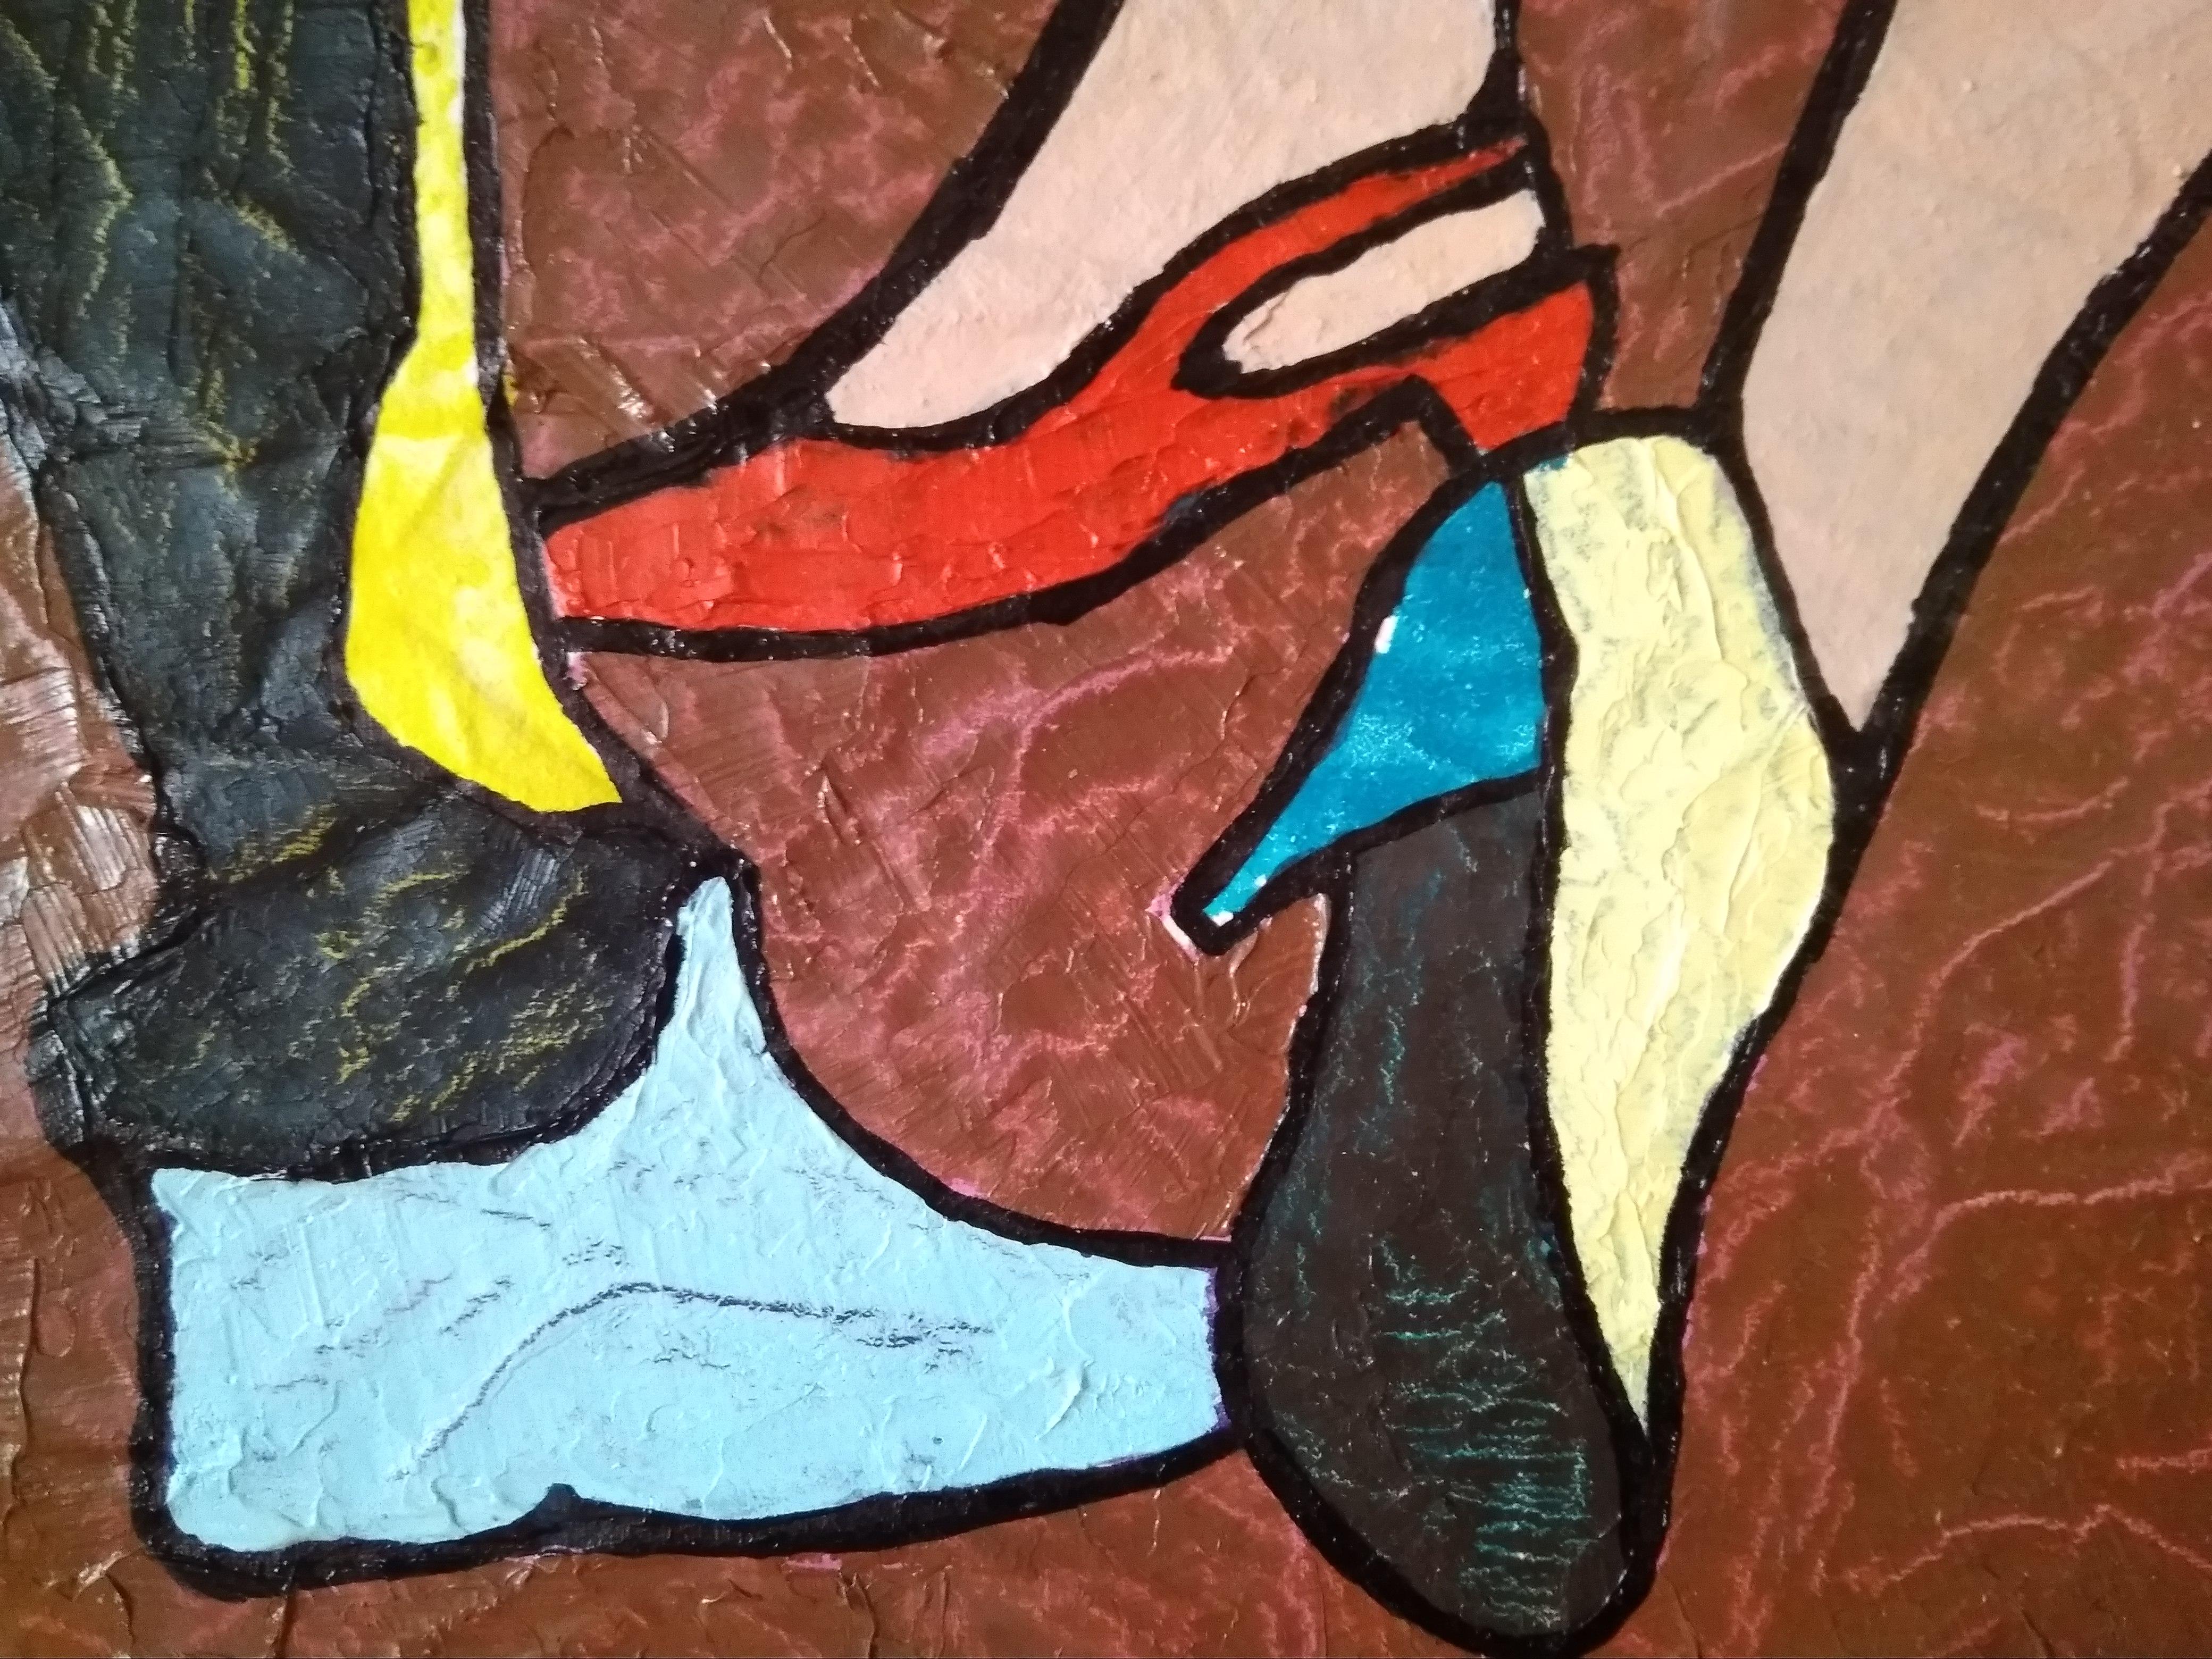 Demolished Lives – Pop Art-Gemälde in Rot, Grün, Lila, Braun und Blau (Pop-Art), Painting, von Vlado Vesselinov